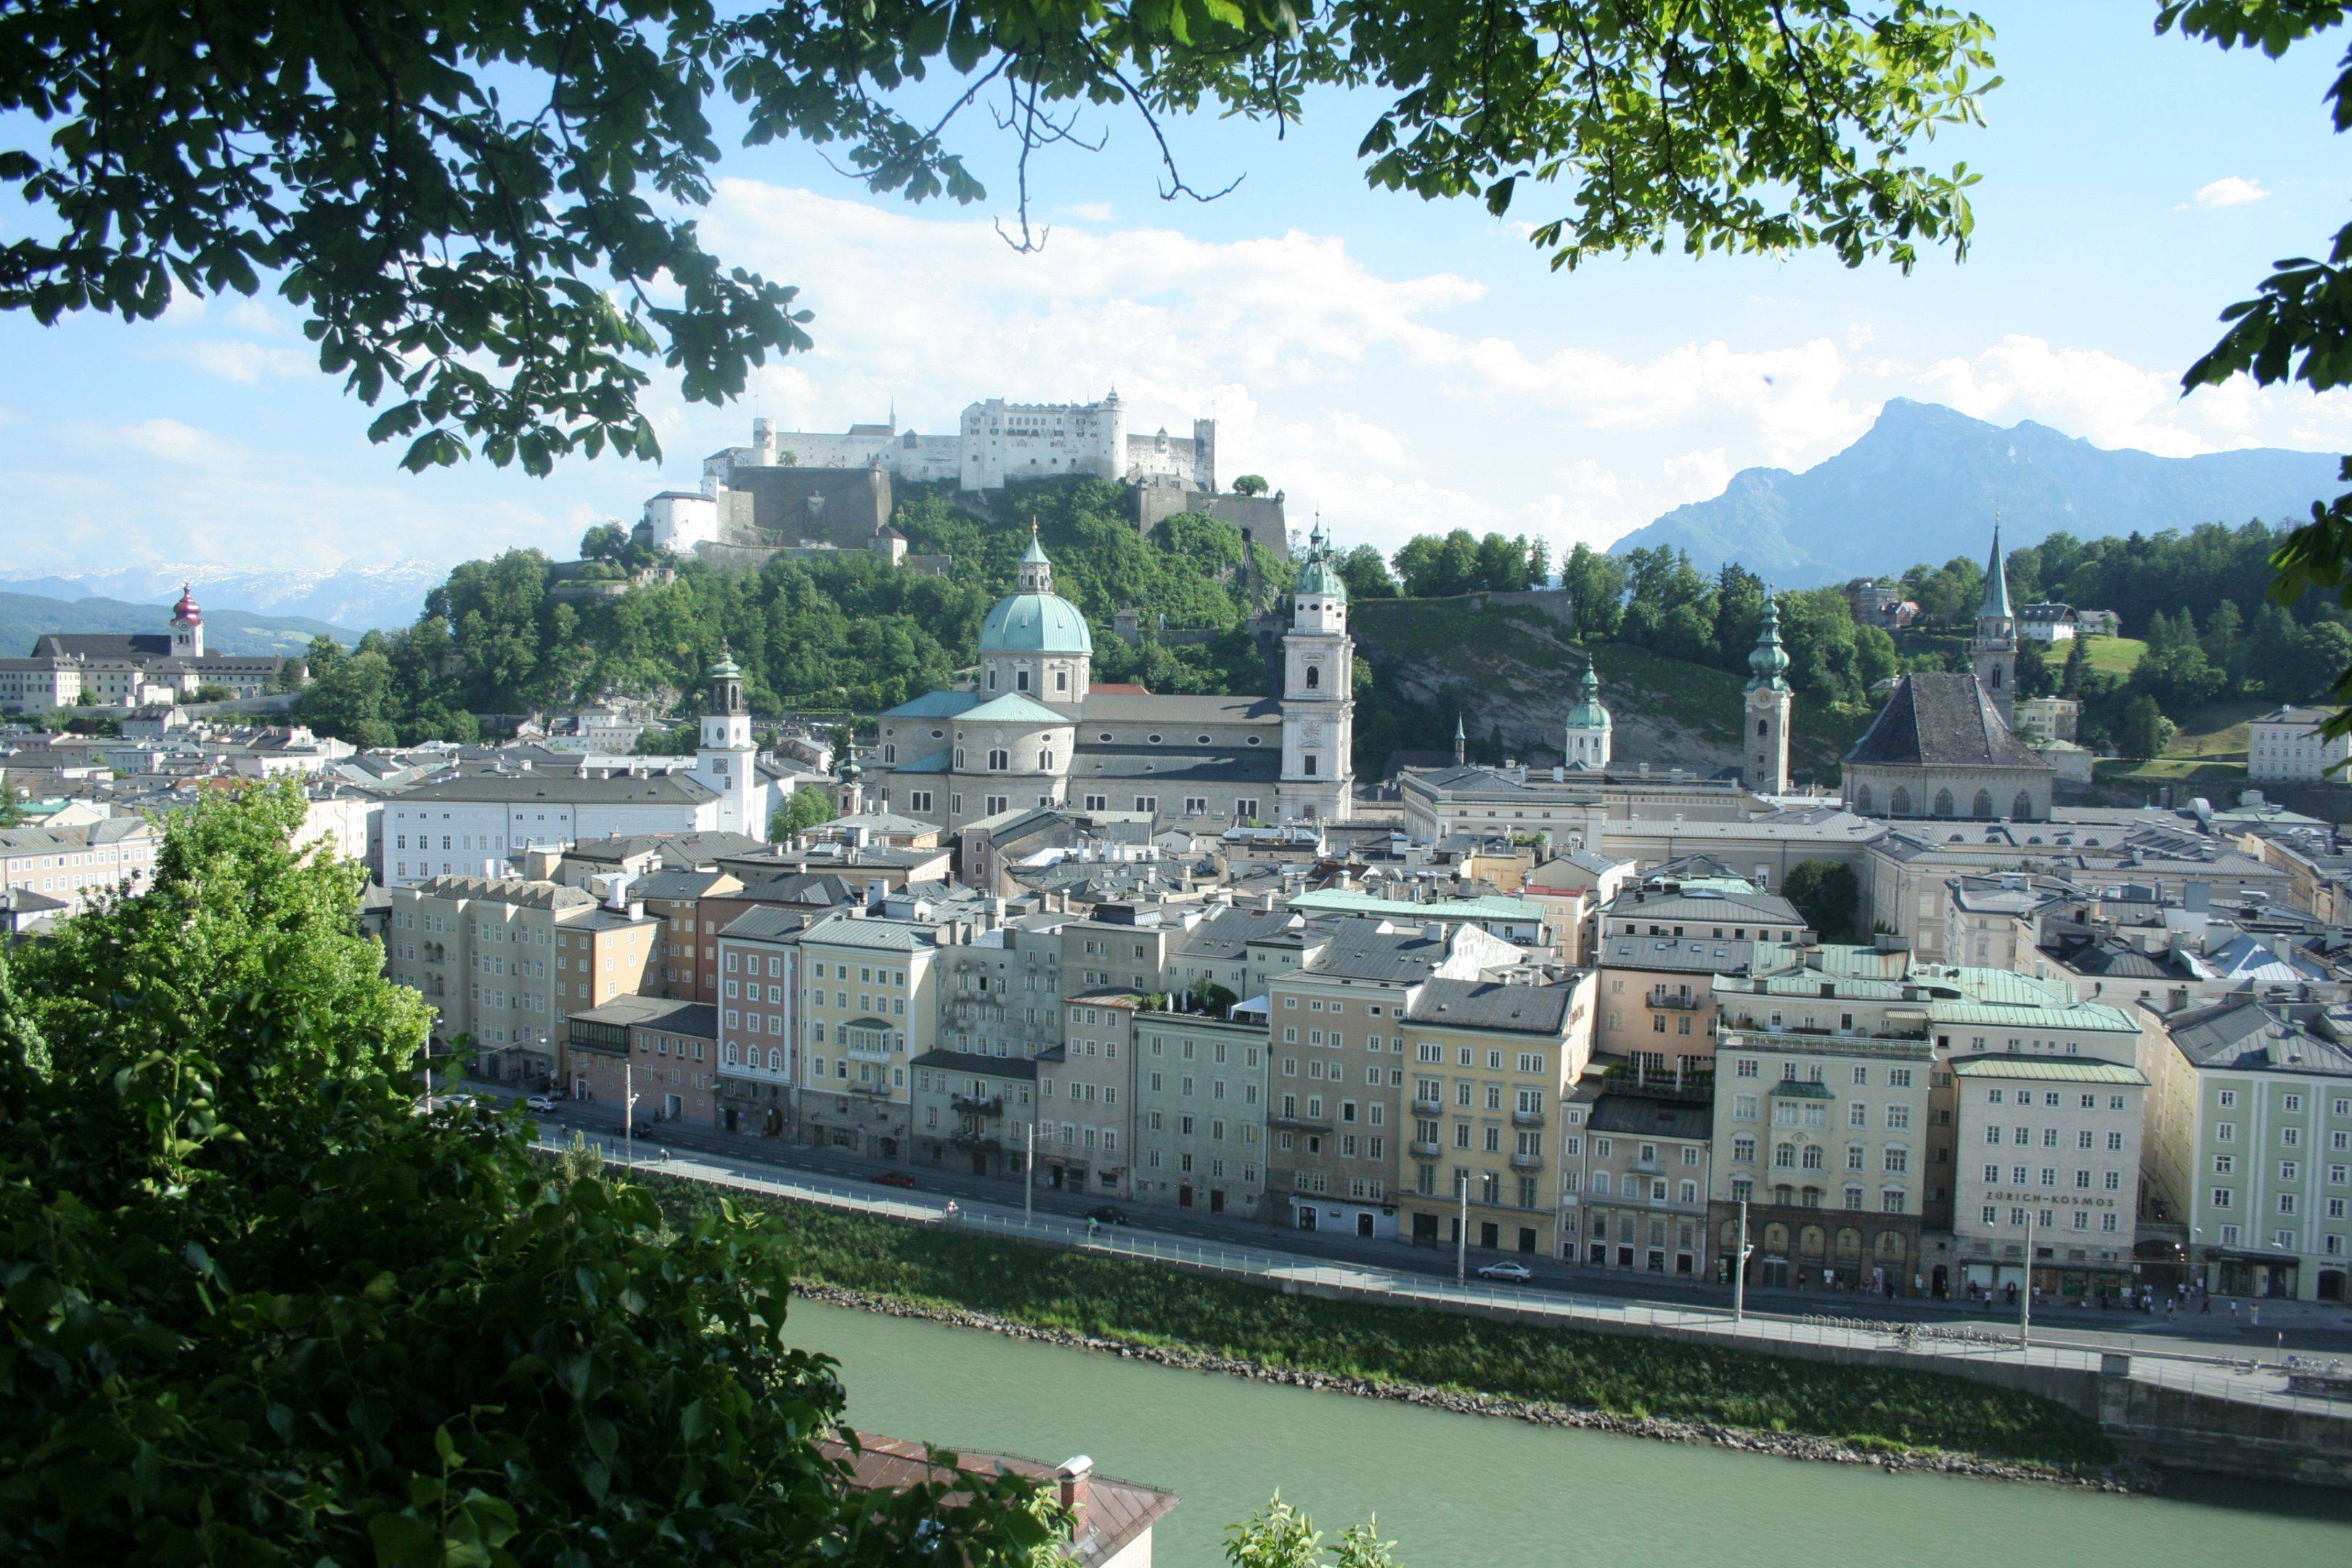 Herzlich willkommen in Salzburg